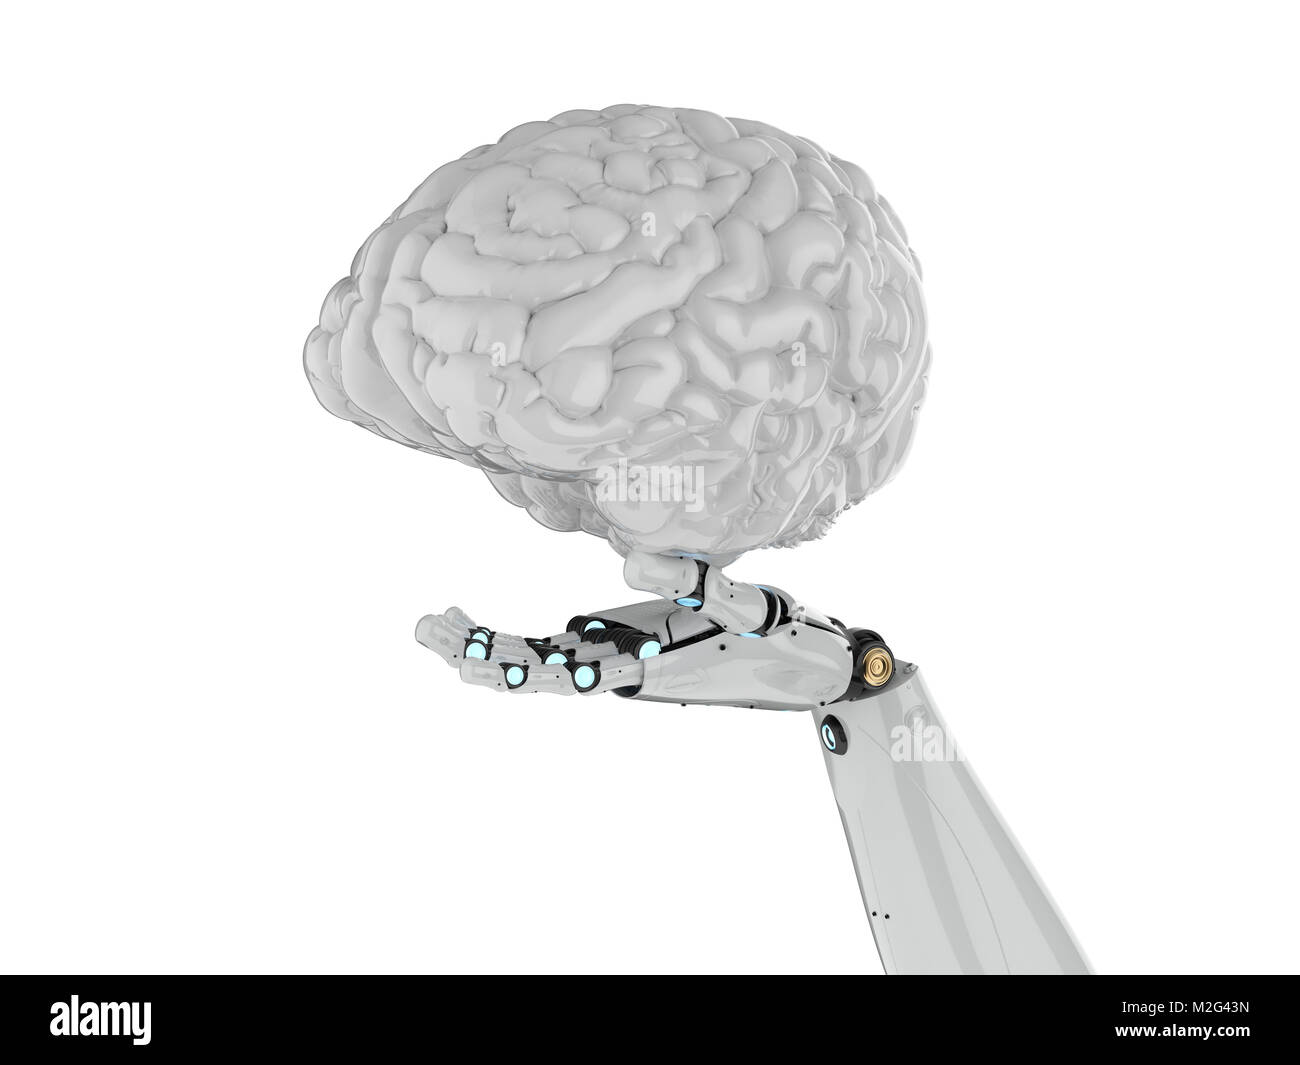 Holograma 3D Del Cerebro Humano En La Mano Del Robot. Representación 3D.  Fotos, retratos, imágenes y fotografía de archivo libres de derecho. Image  177559307